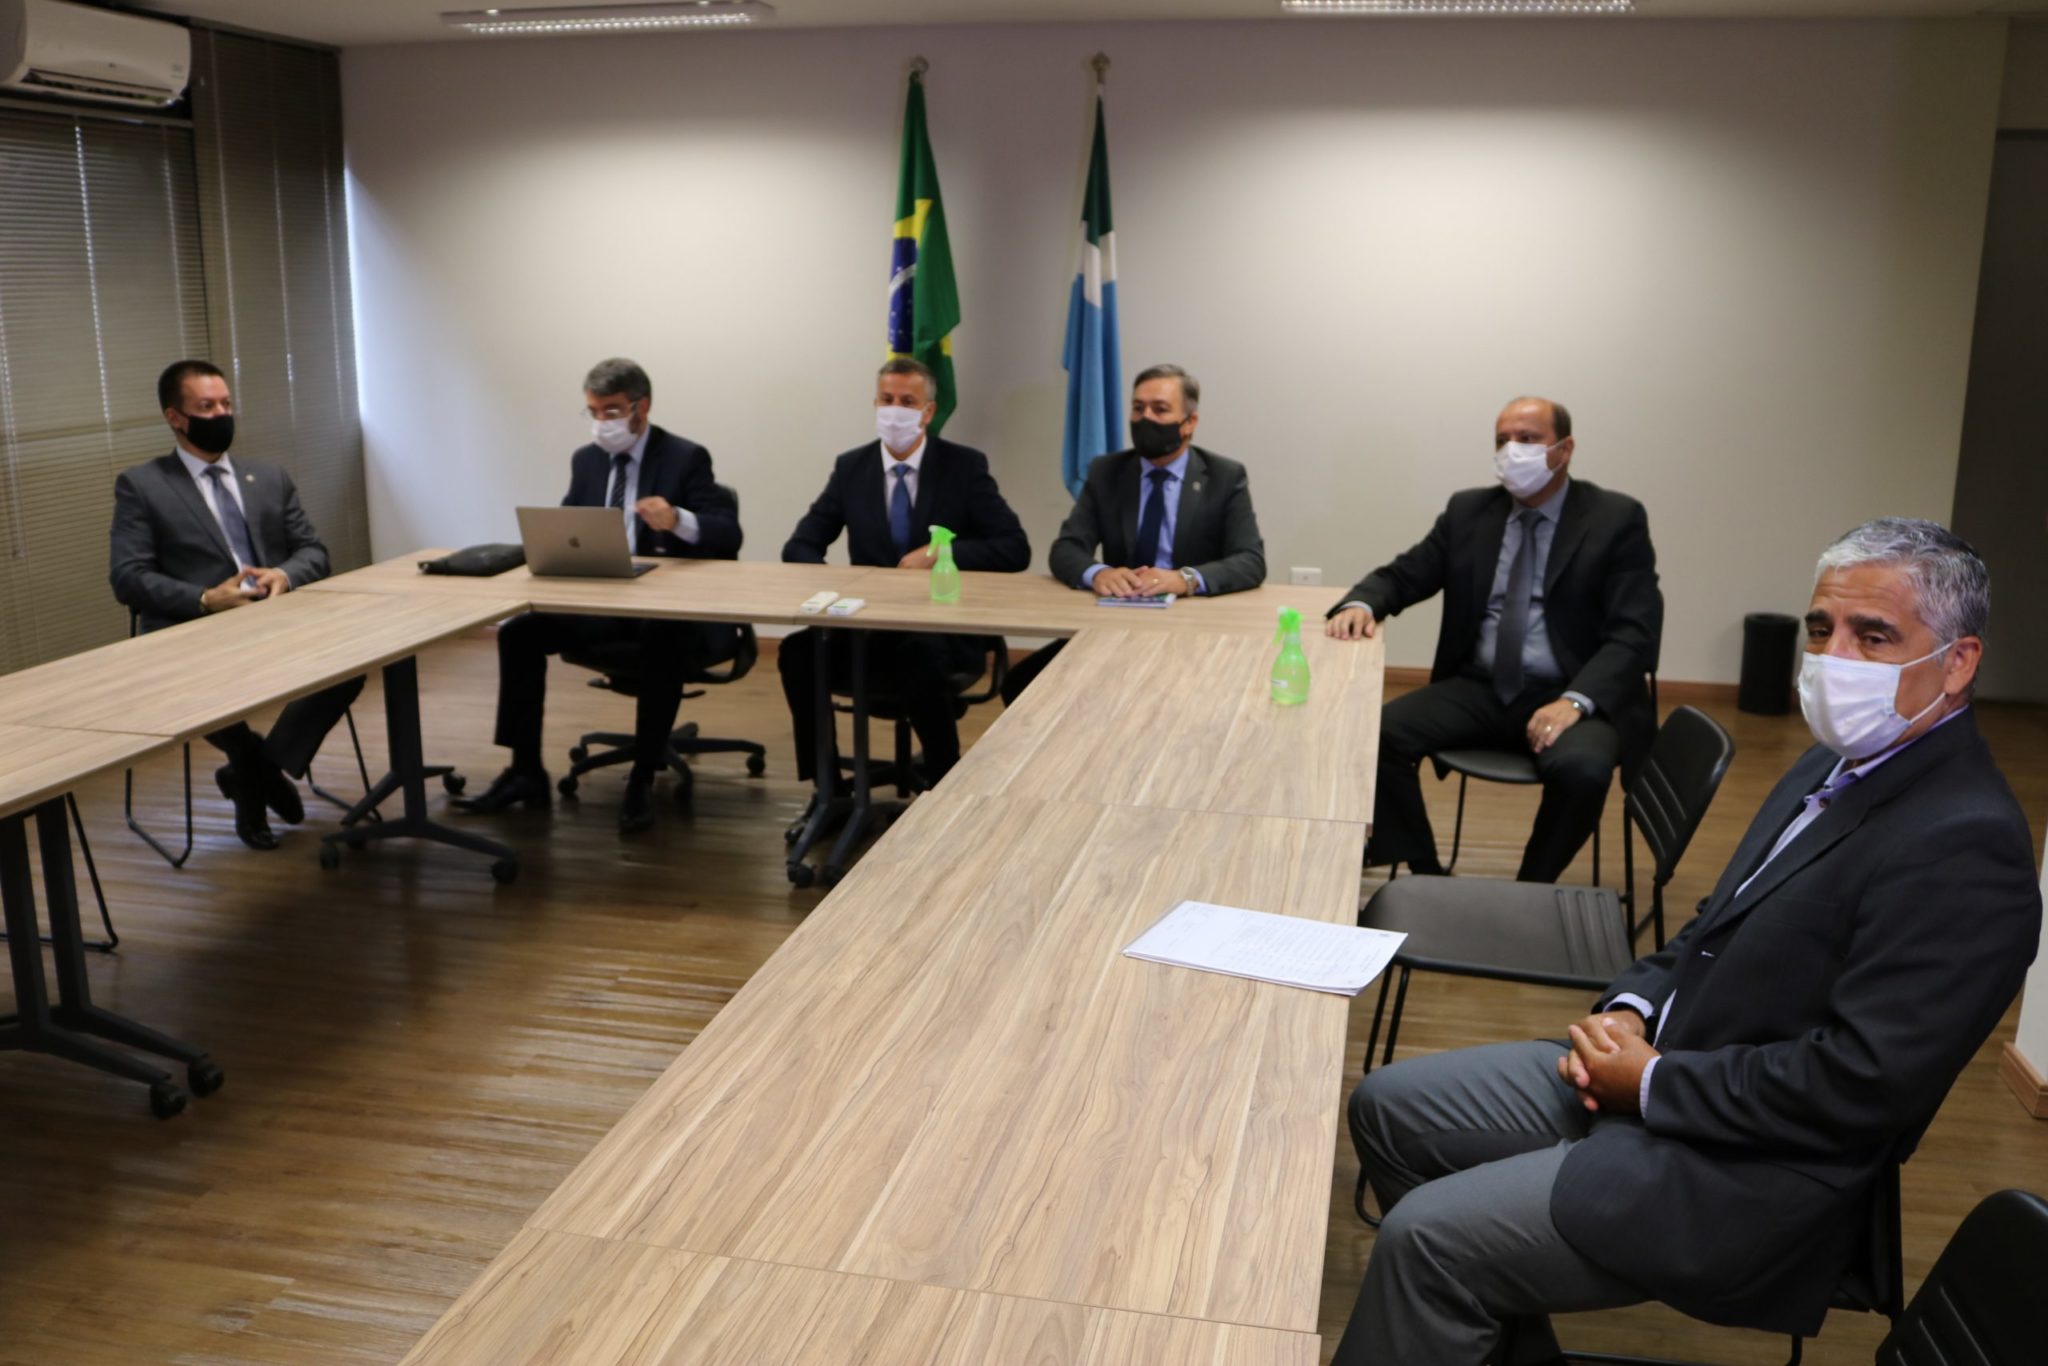 Delegado Geral participa de reunião com secretário Nacional Antidrogas sobre destinação de veículos apreendidos no MS